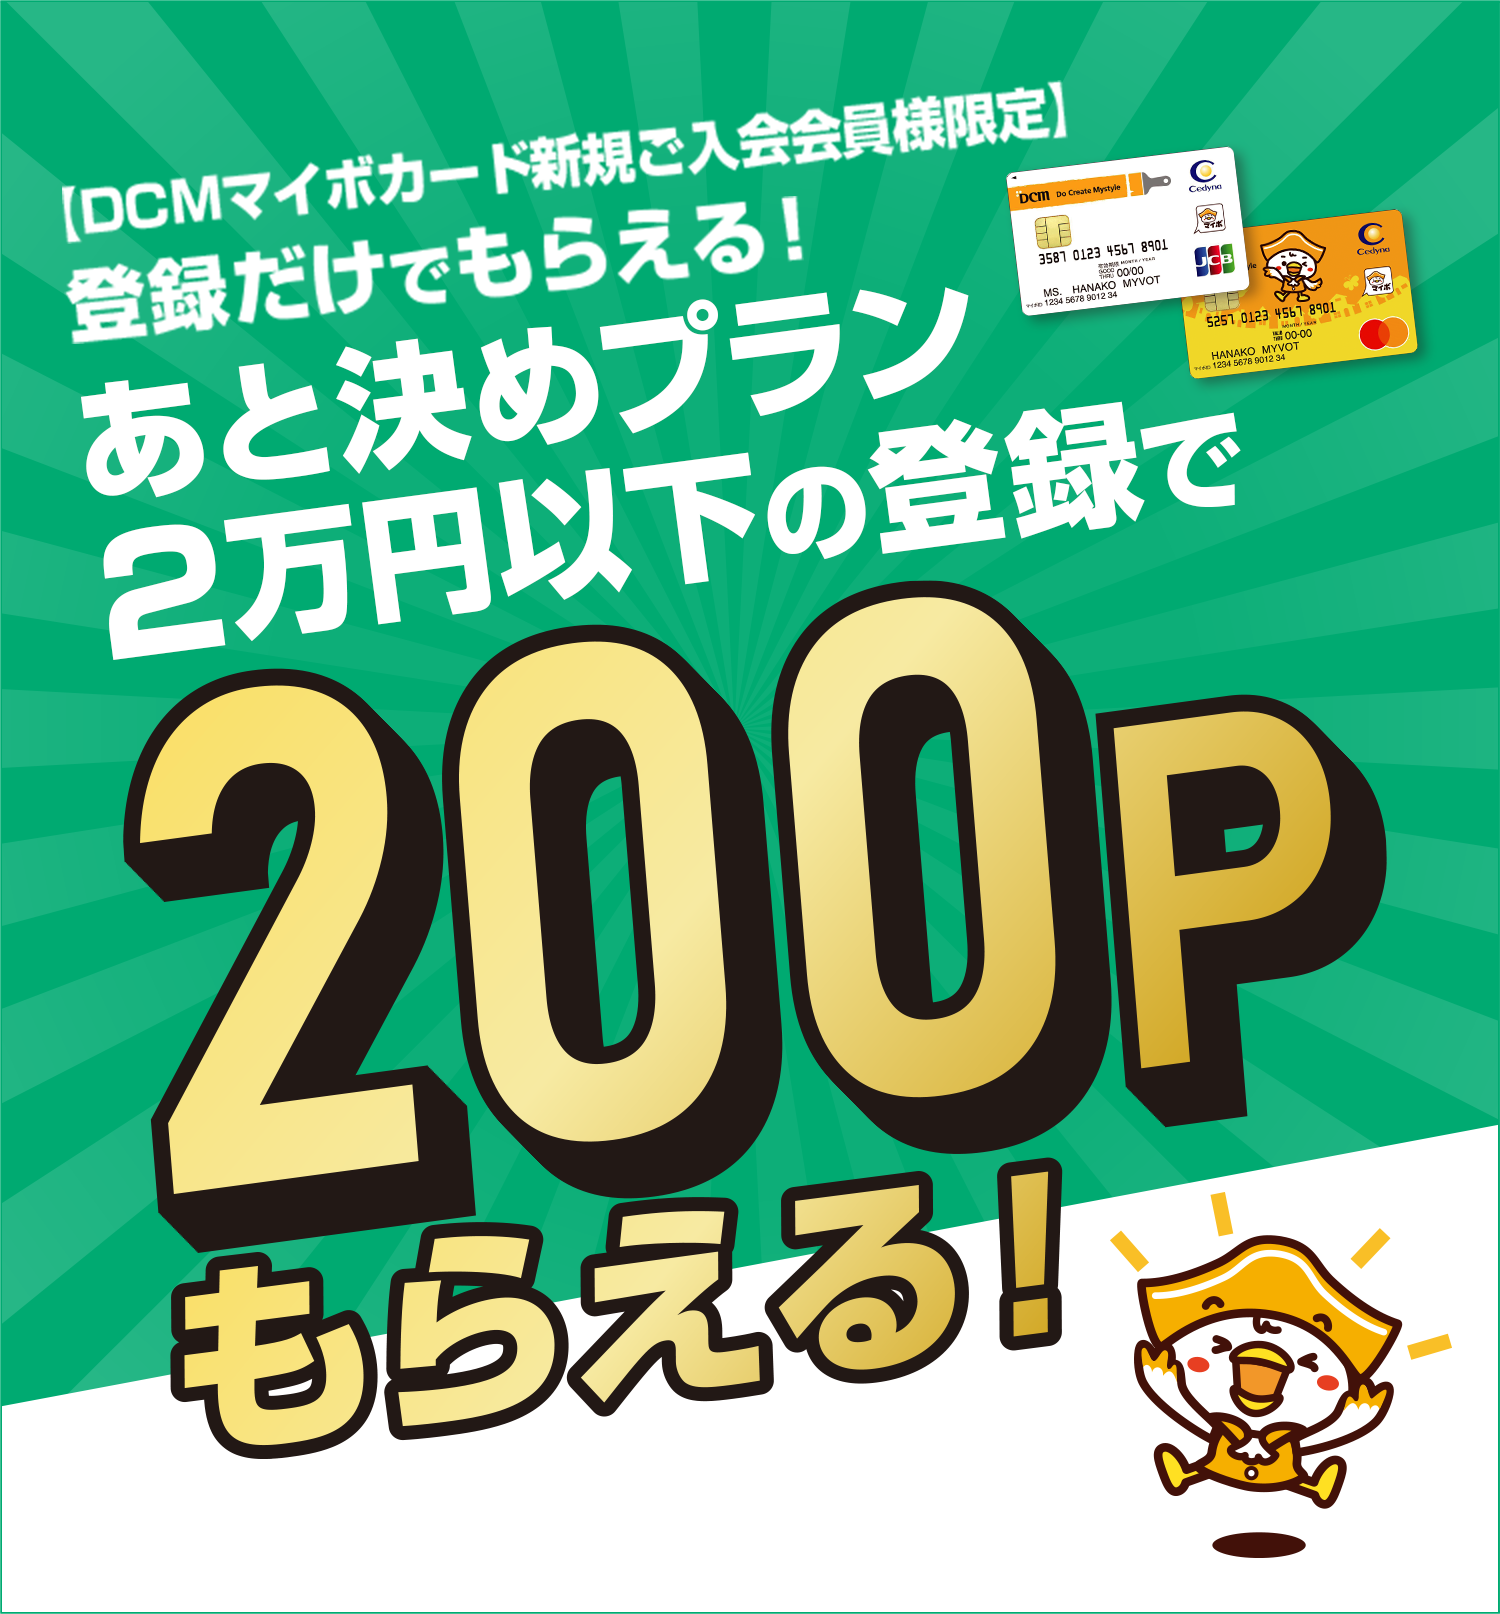 登録だけでもらえる！あと決めプラン2万円以下の登録で200Pもらえる！